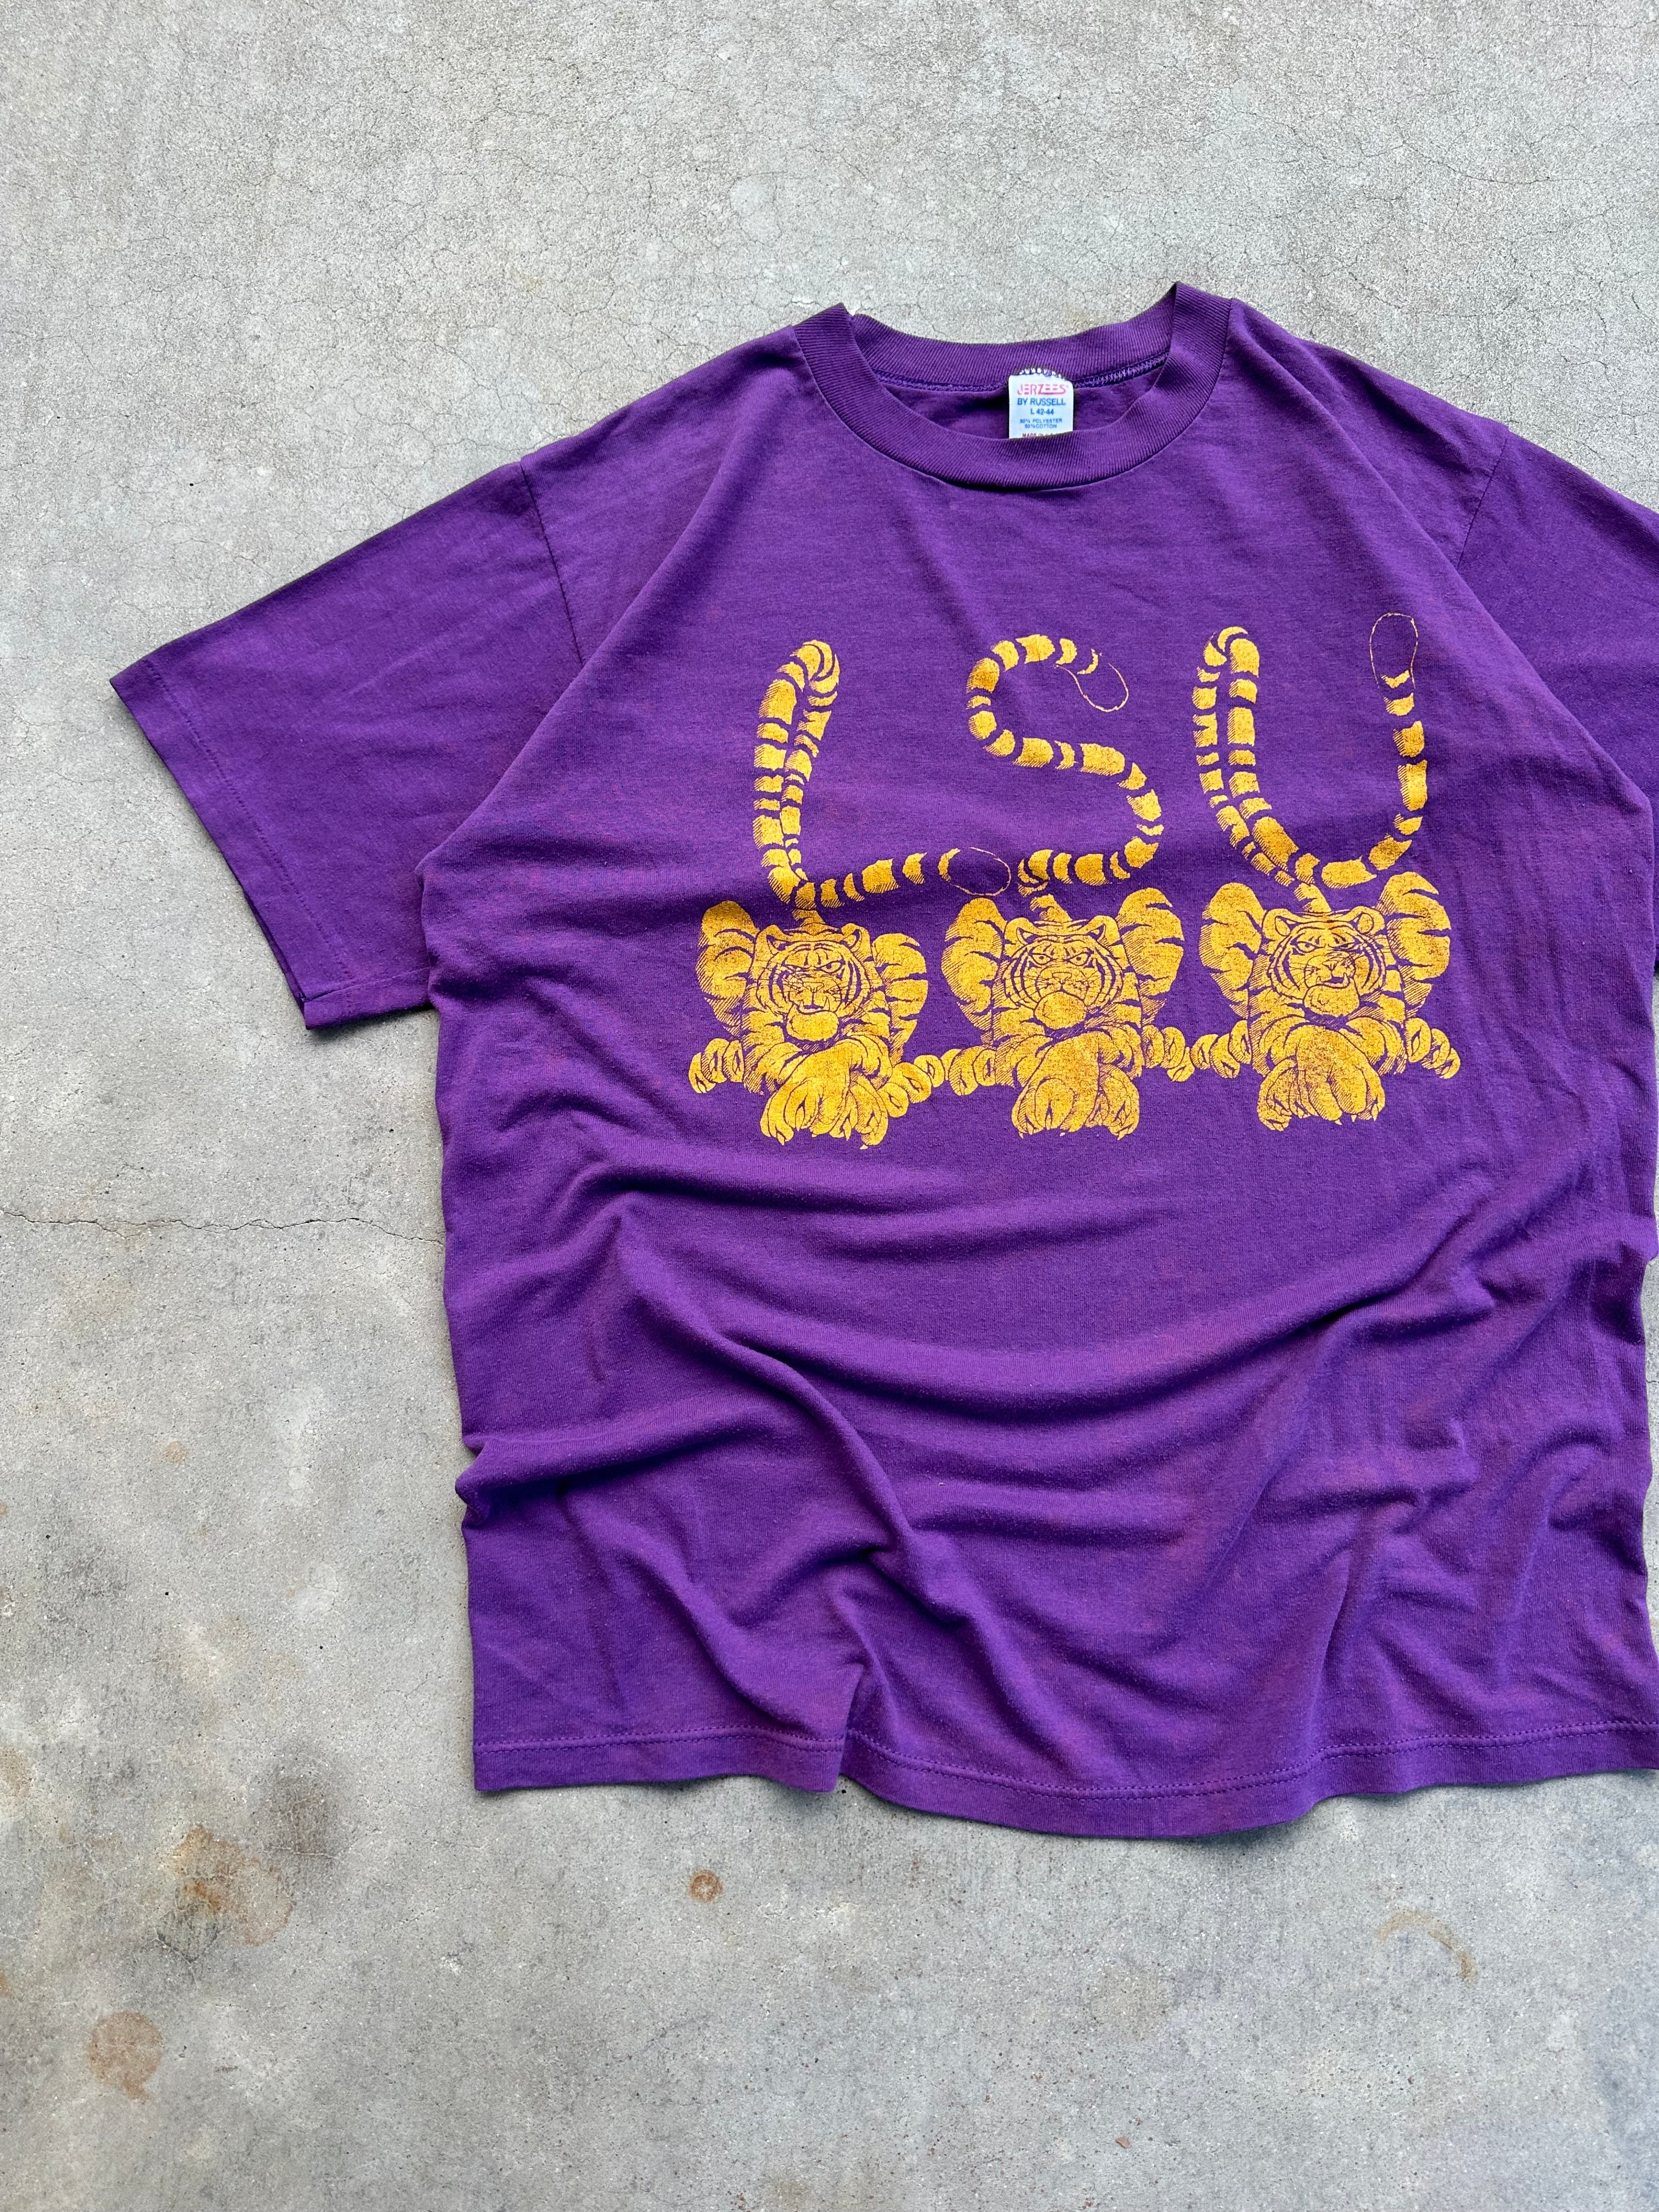 1980s LSU Tigers T-Shirt (M/L)